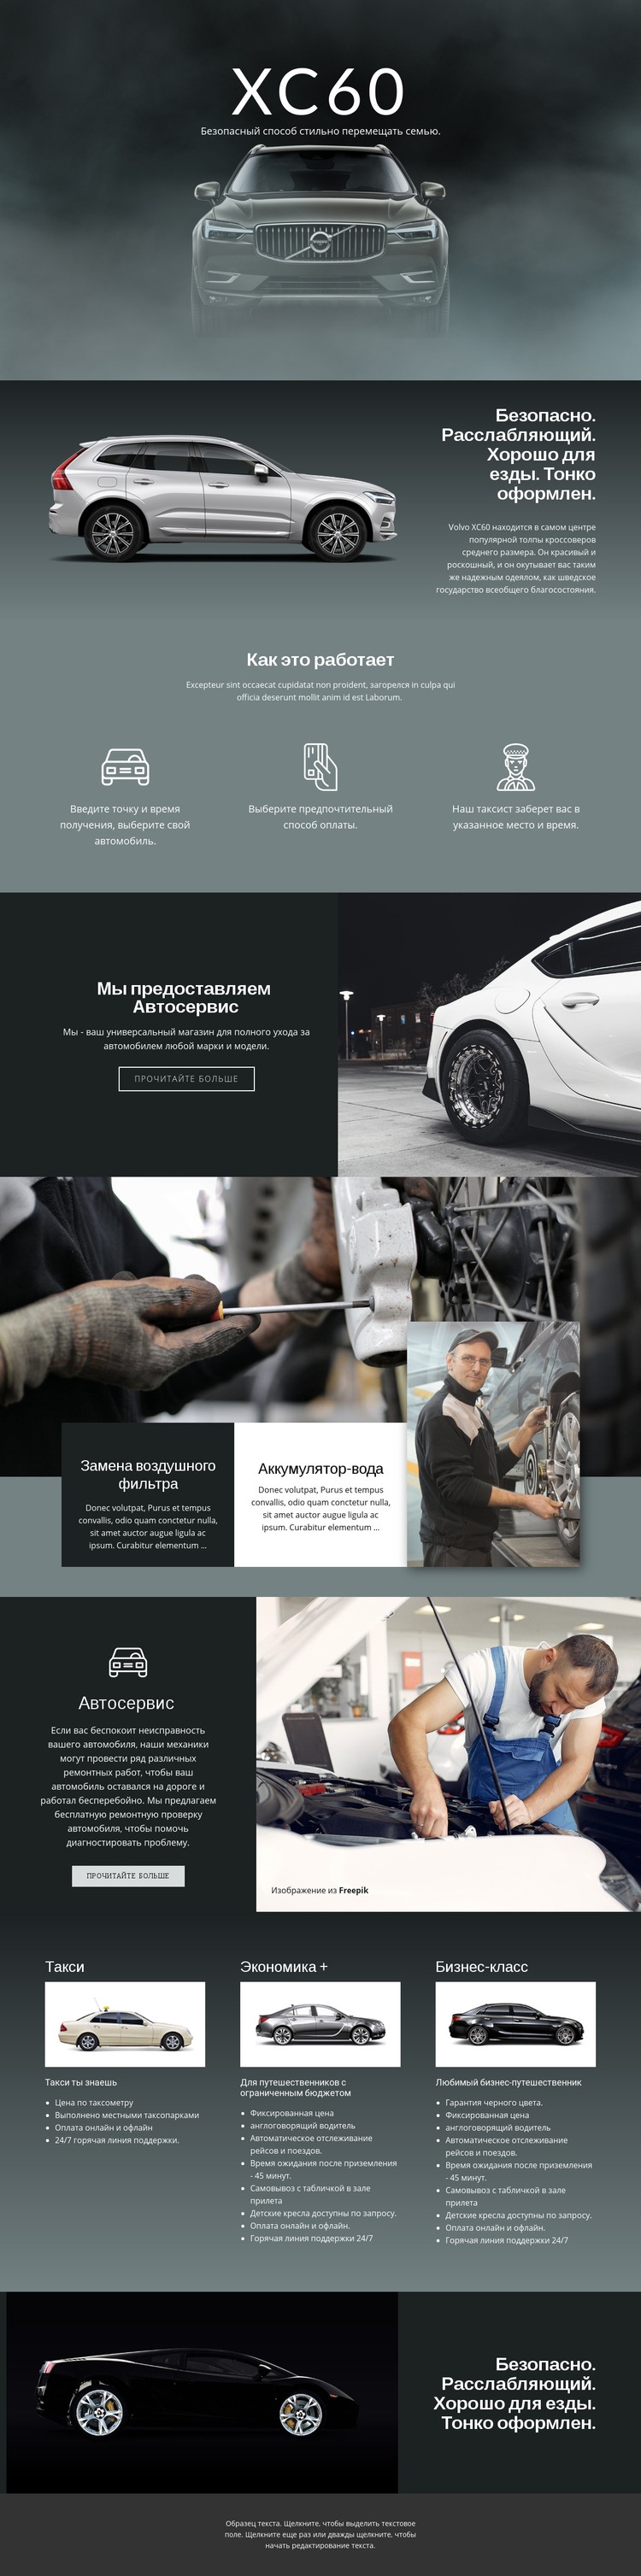 Volvo XC60 внедорожник HTML5 шаблон